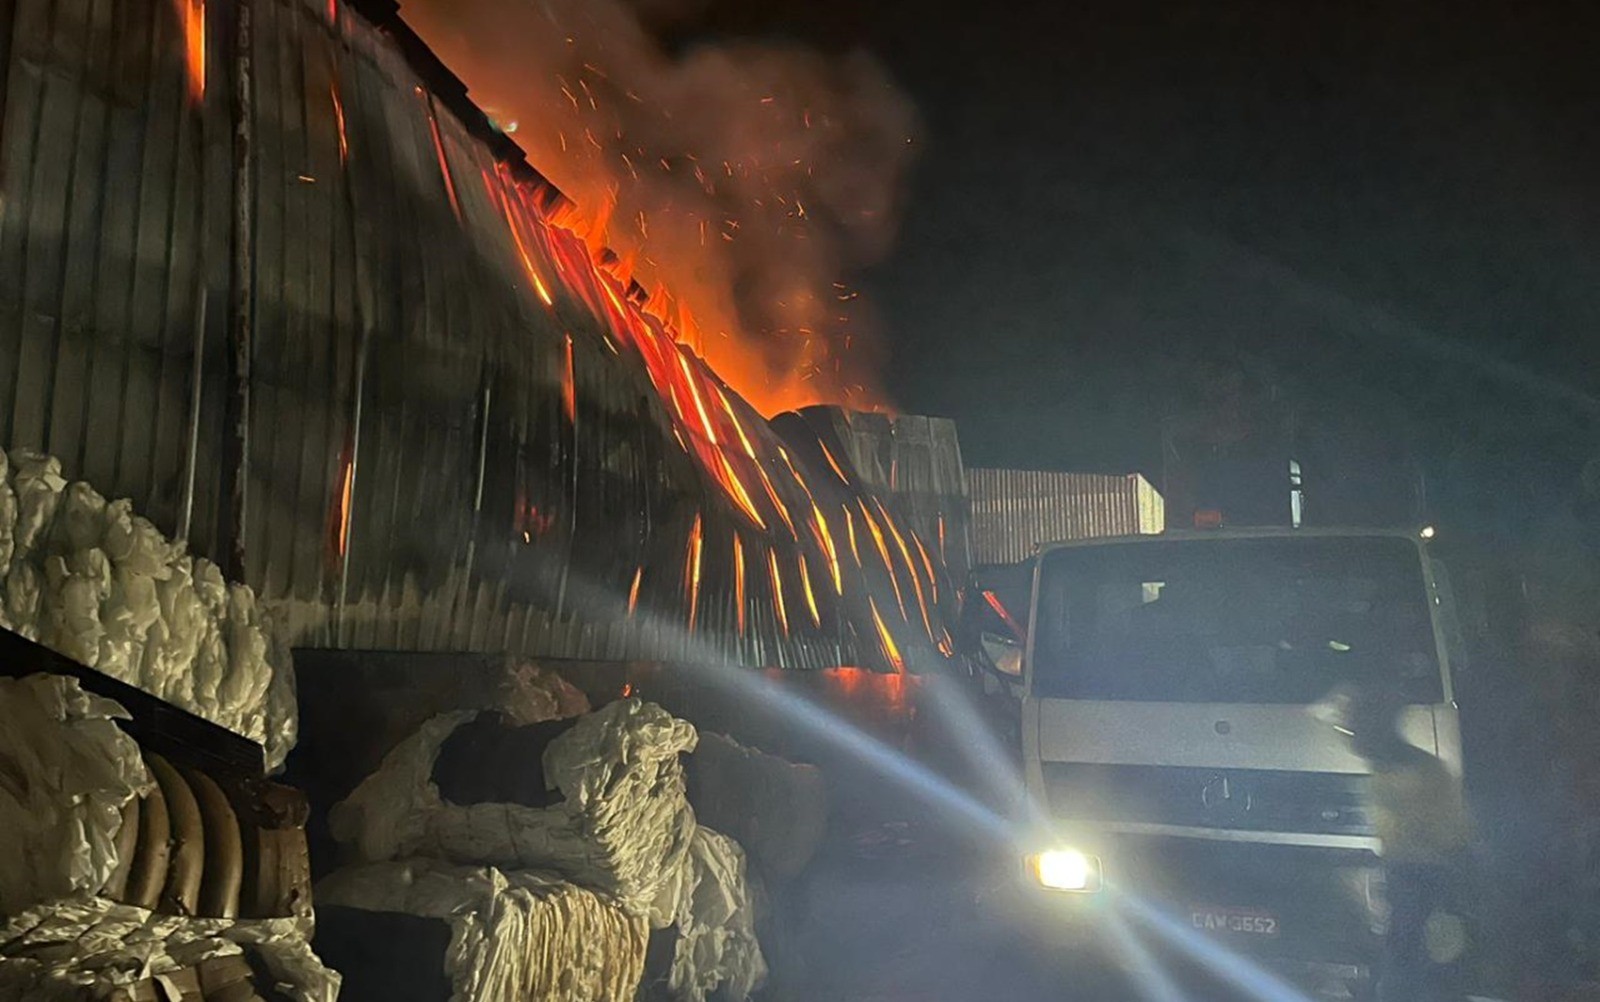 Galpão com materiais recicláveis e latas de leite em pó vencidas pega fogo em Poços de Caldas, MG